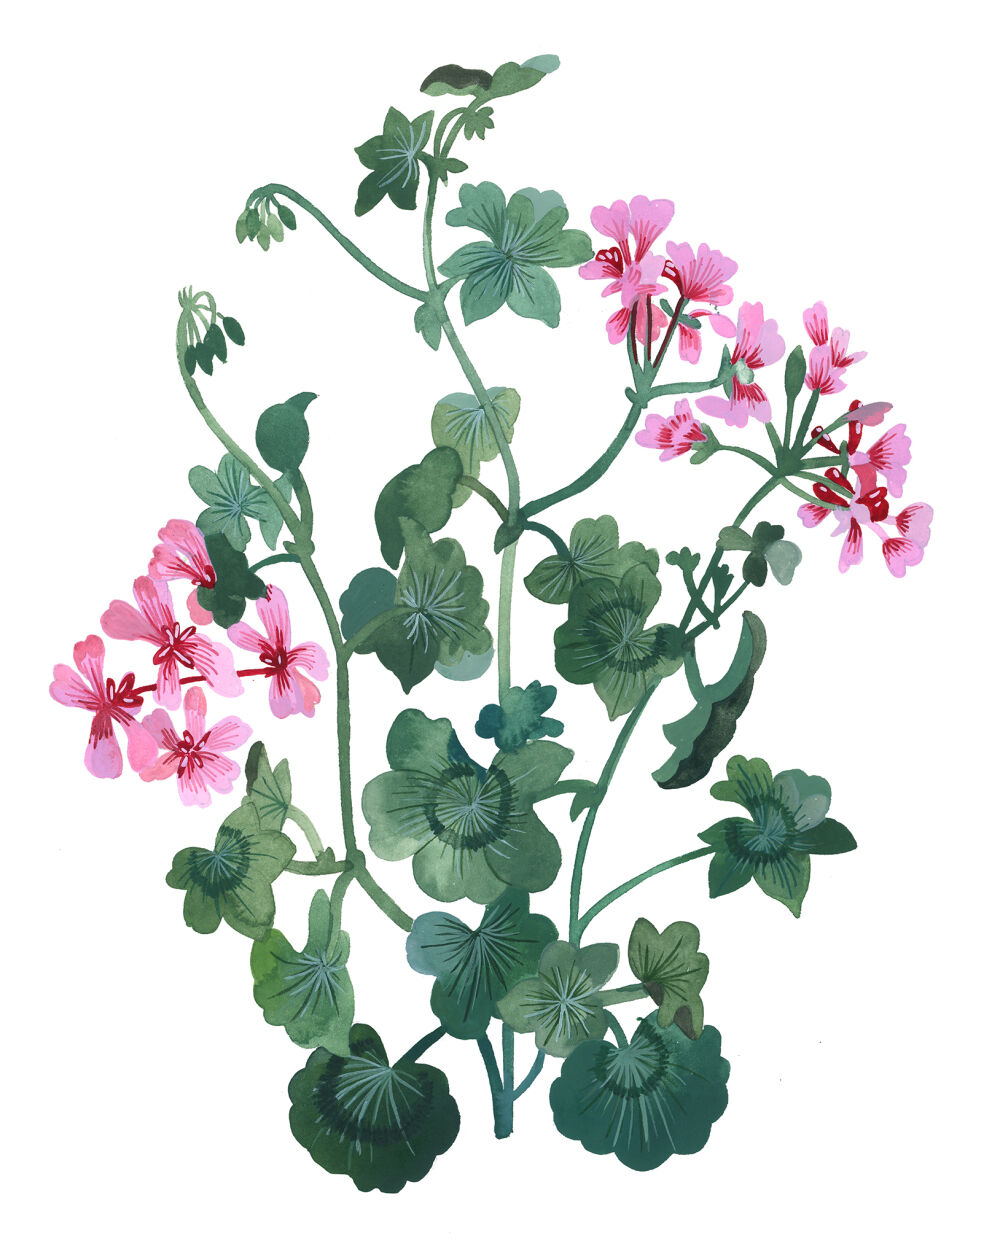 Botanical artwork by Malin Gyllensvaan